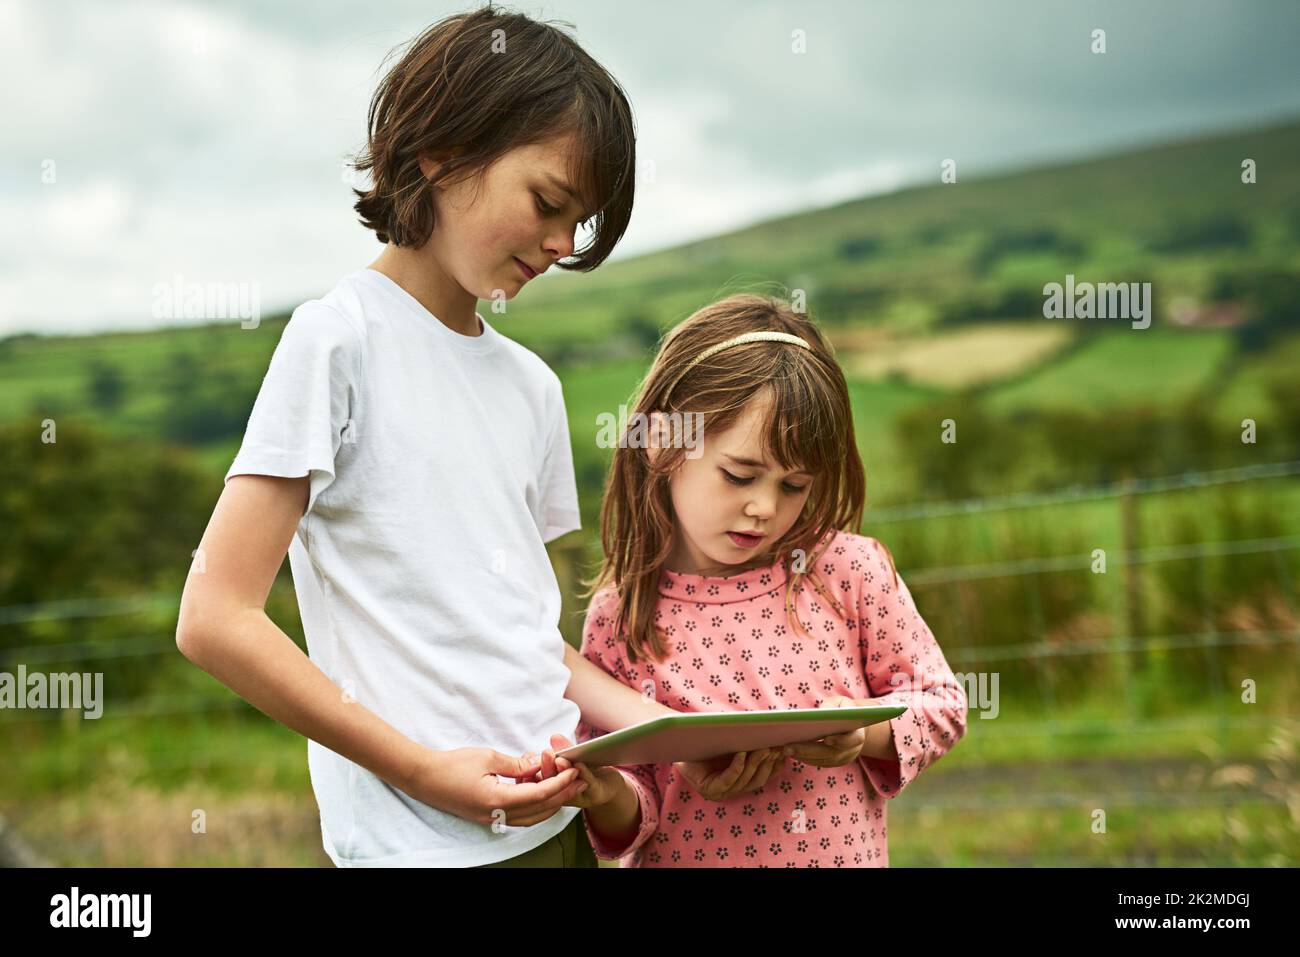 Die Wunder der digitalen Welt teilen. Aufnahme von zwei kleinen Geschwistern mit einem digitalen Tablet im Freien. Stockfoto